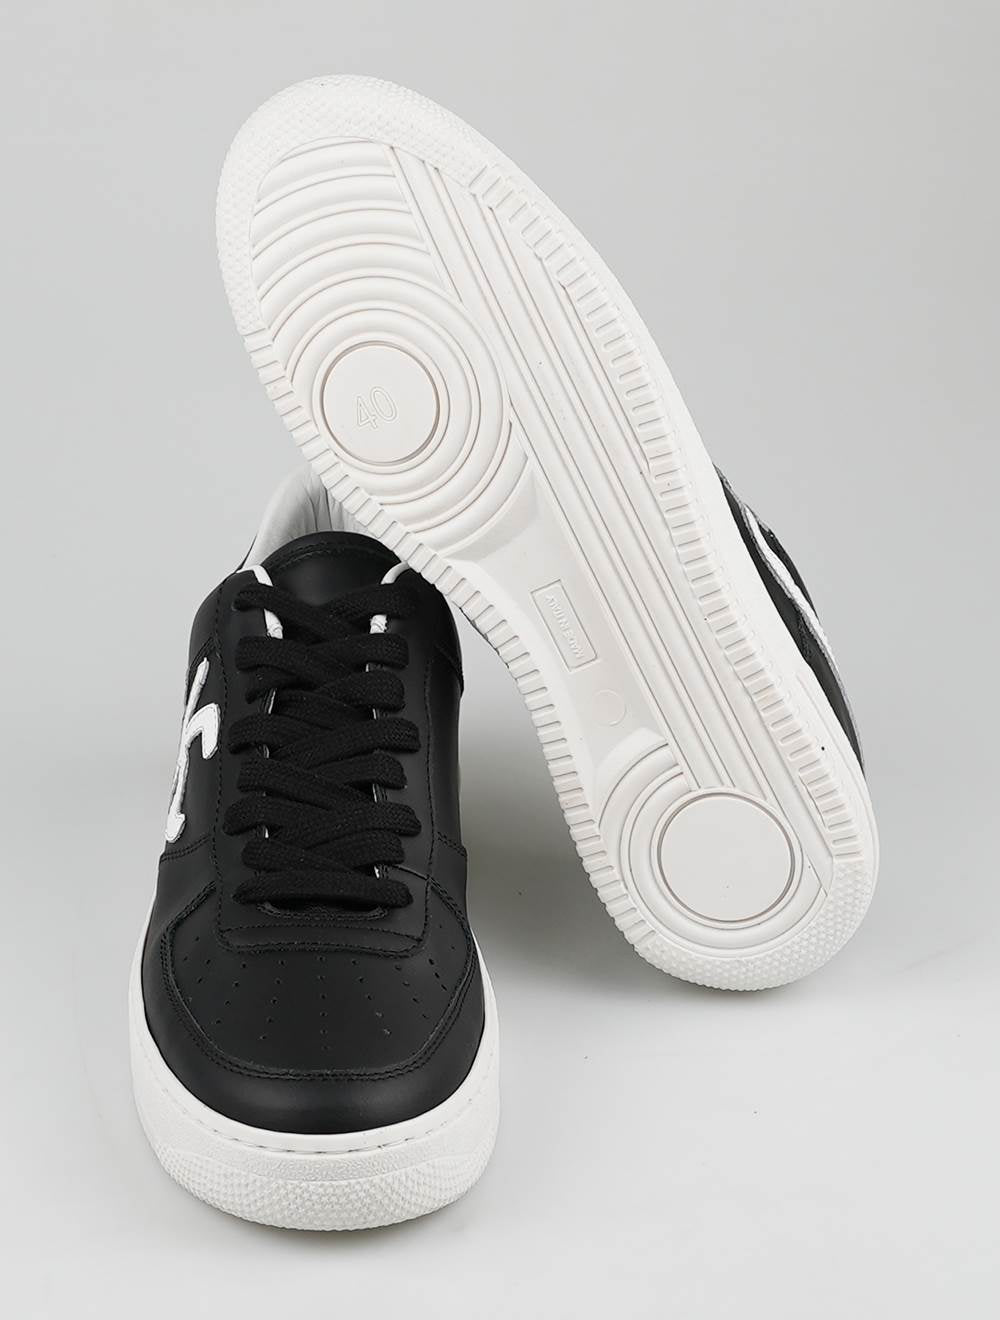 KNT Kiton Black White Leather Sneakers